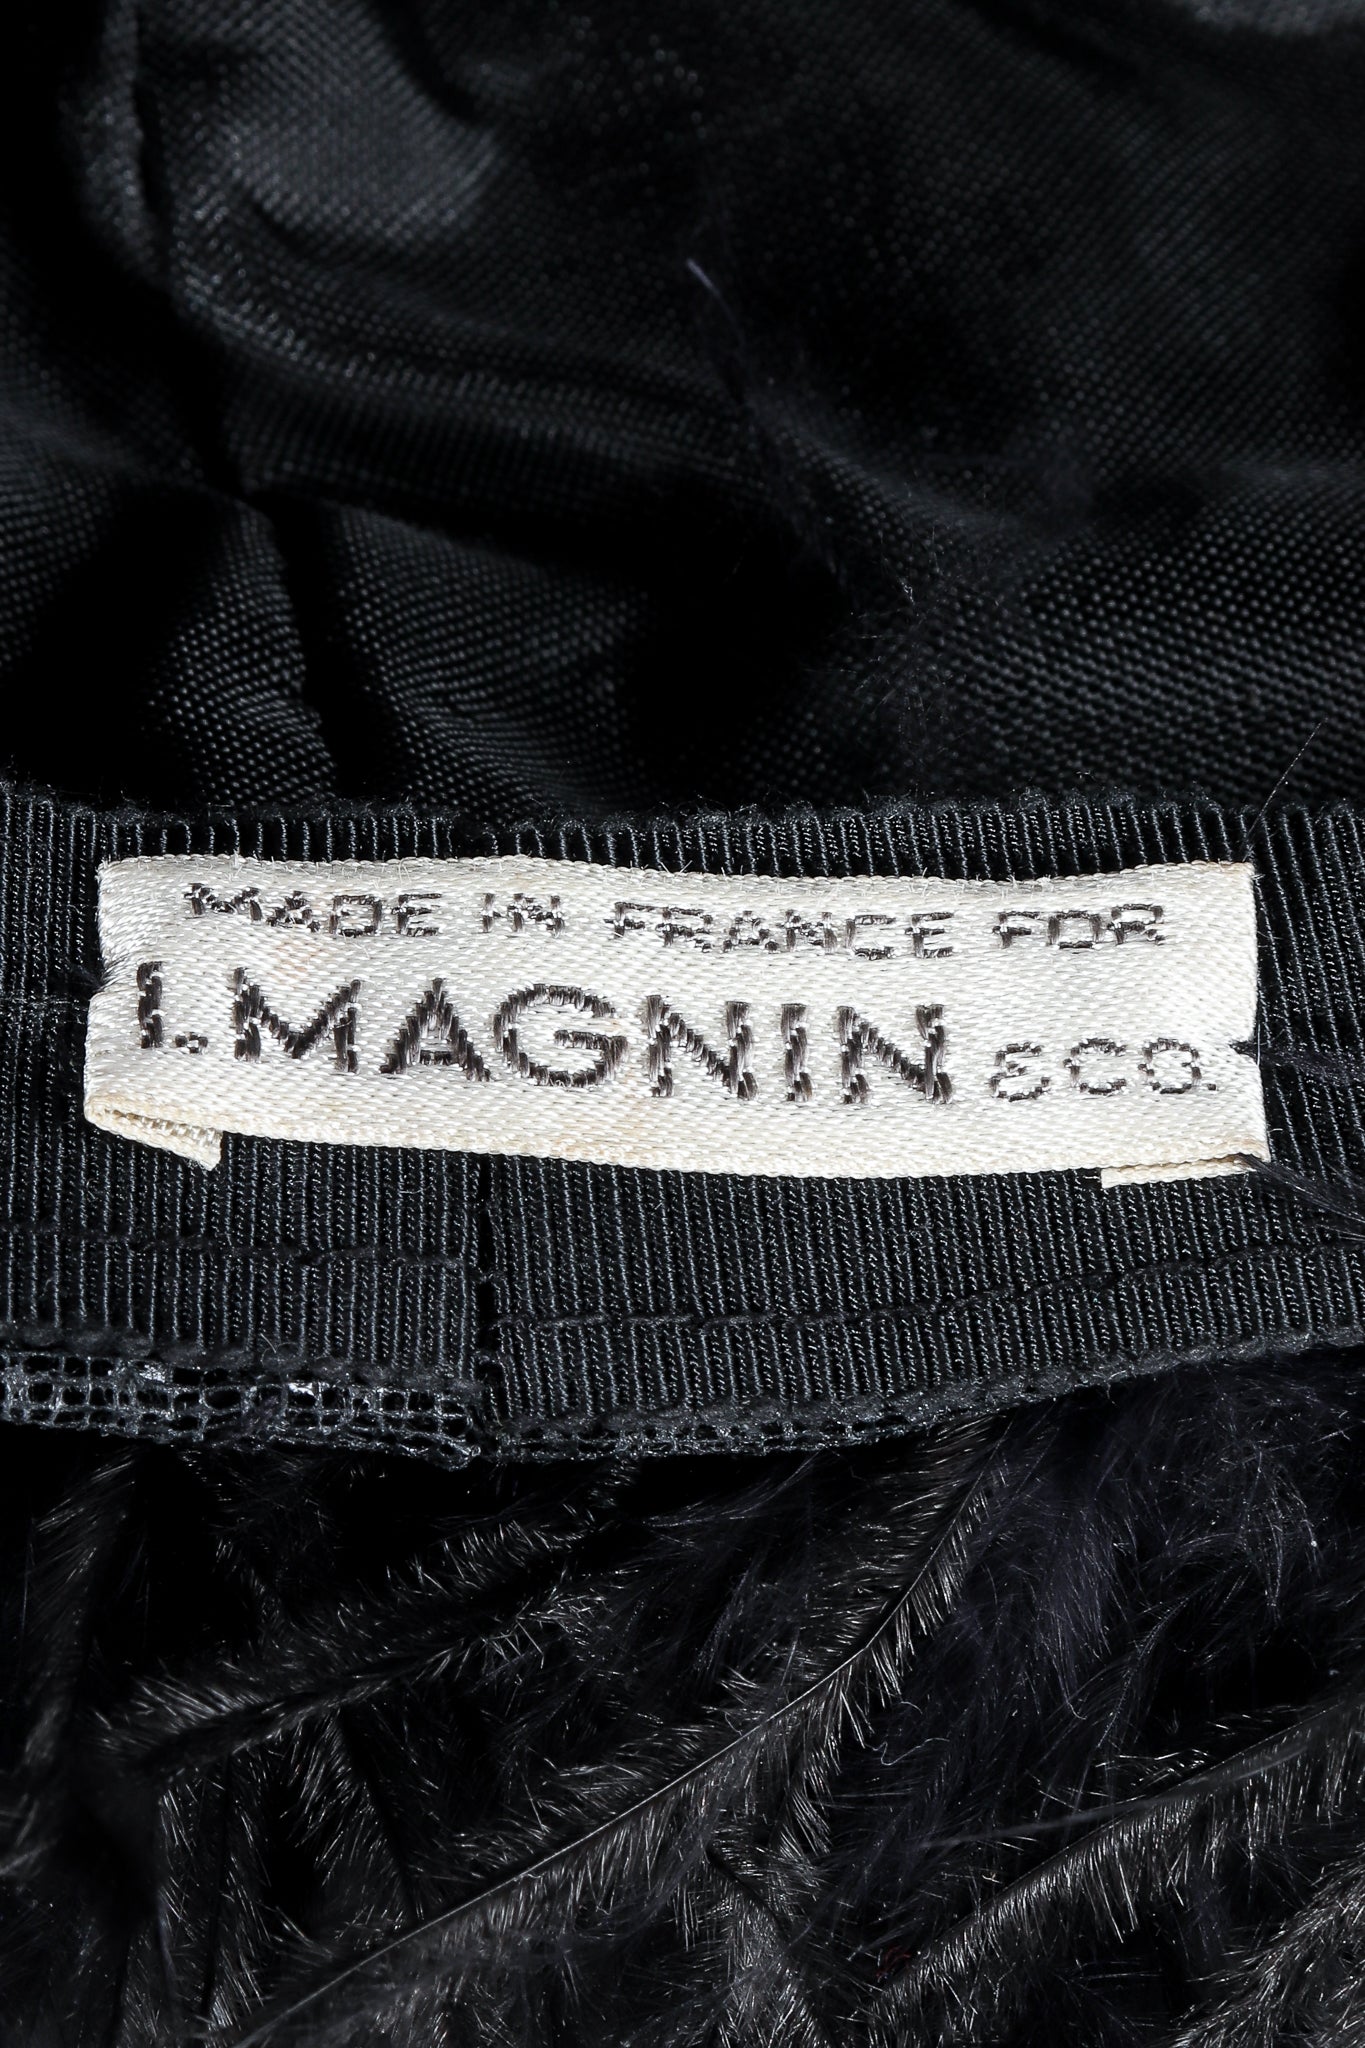 Vintage I.Magnin Label on black lining